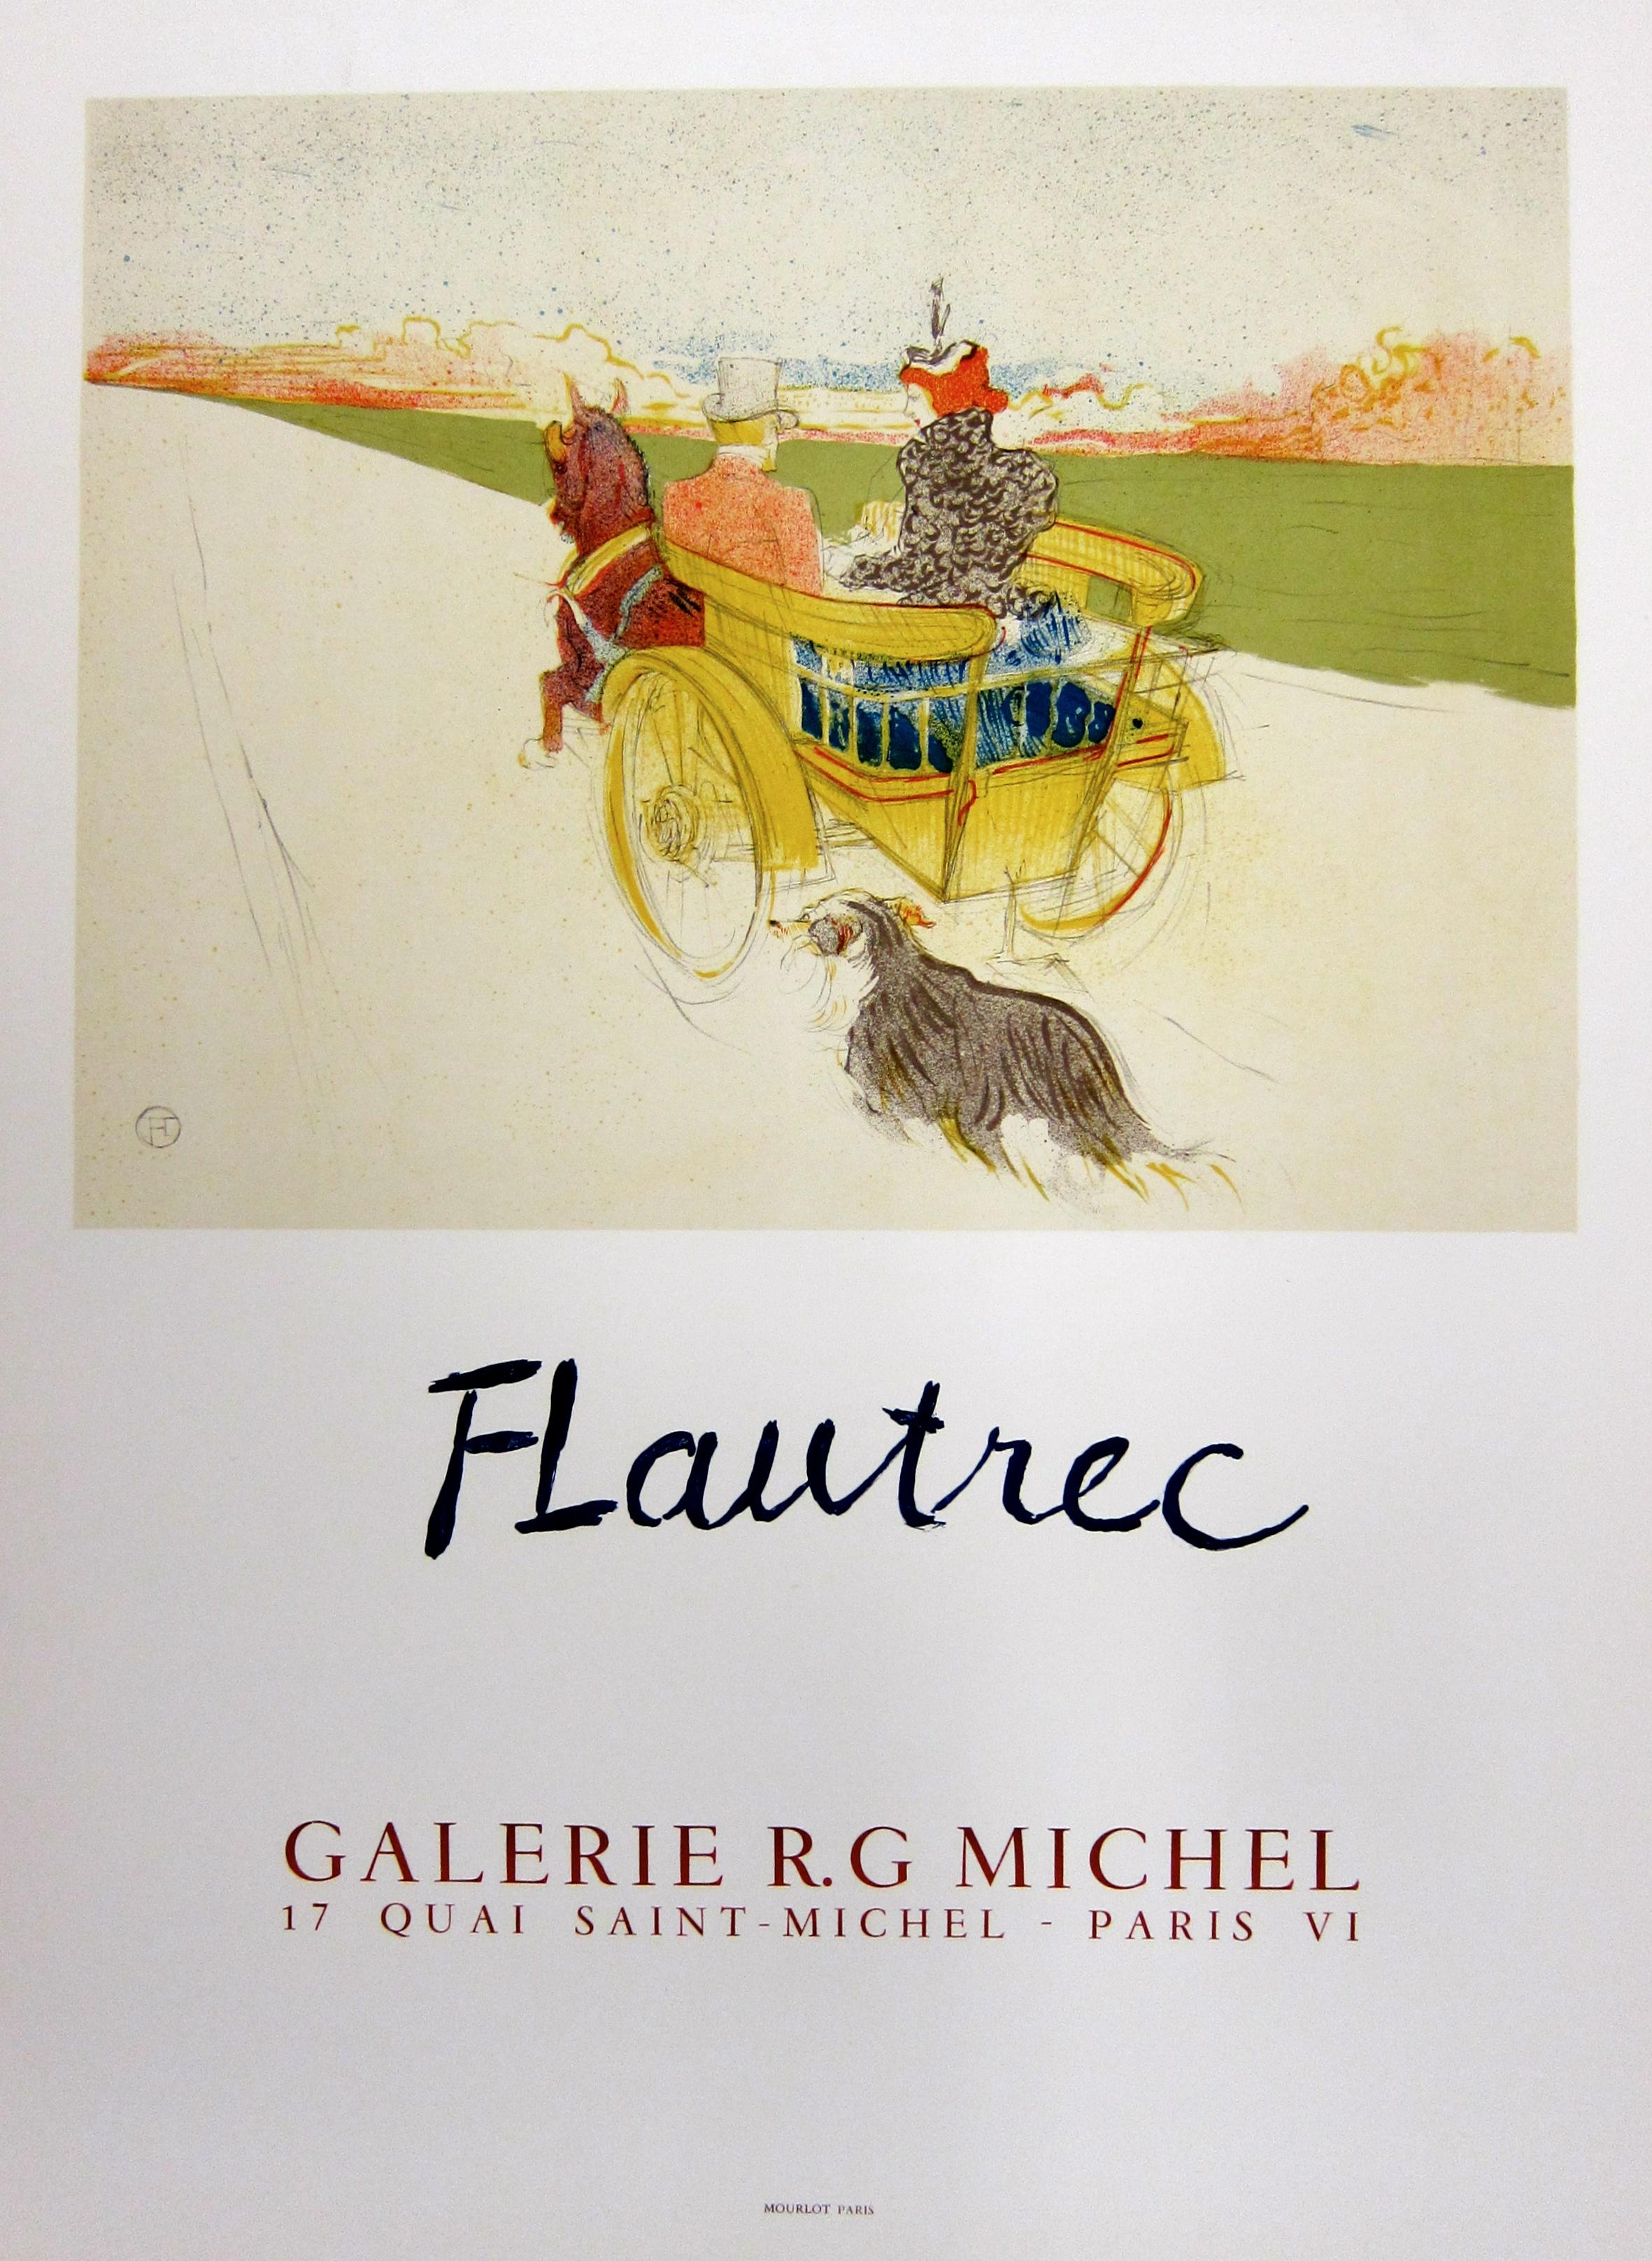 Dieses lithografische Plakat wurde nach Henri de Toulouse-Lautrec für eine Ausstellung in der Galerie R.G Michel in Paris im Jahr 1954 entworfen. Dieses Plakat, das auf der Original-Lithographie von 1897 mit dem Titel "La party de Campagne" basiert,